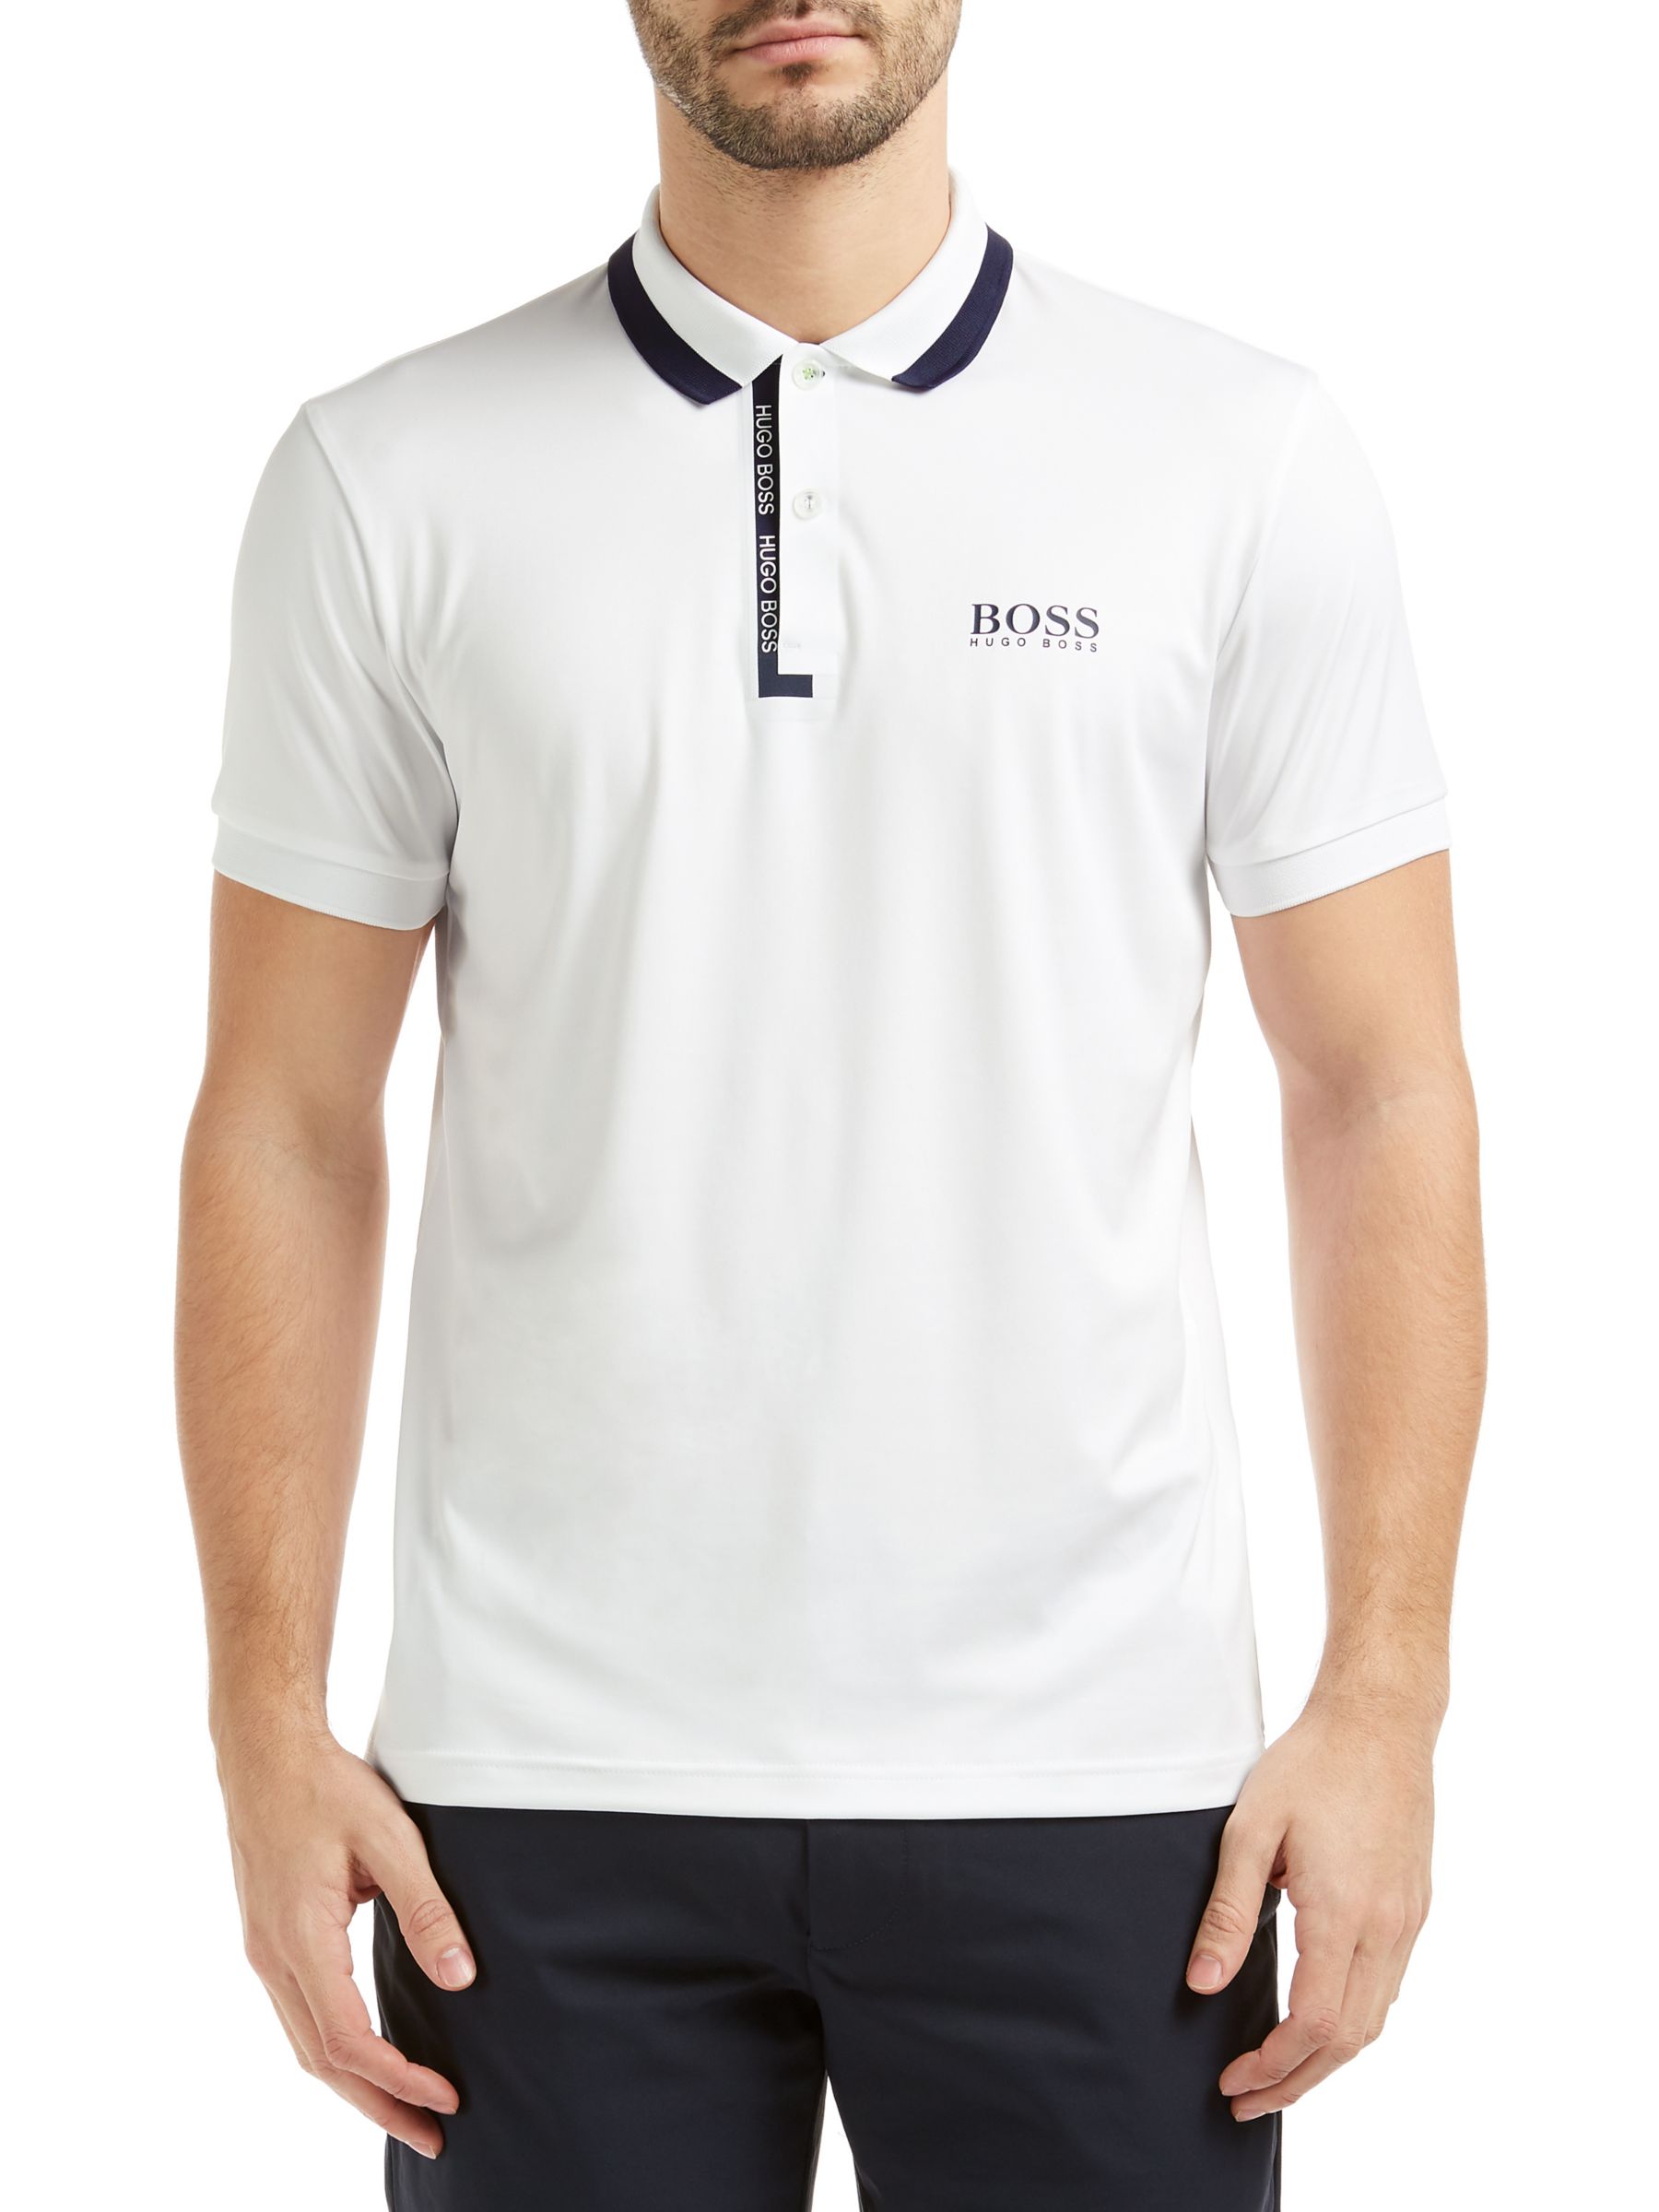 BOSS Green Paddy Pro Golf 2 Shirt, White